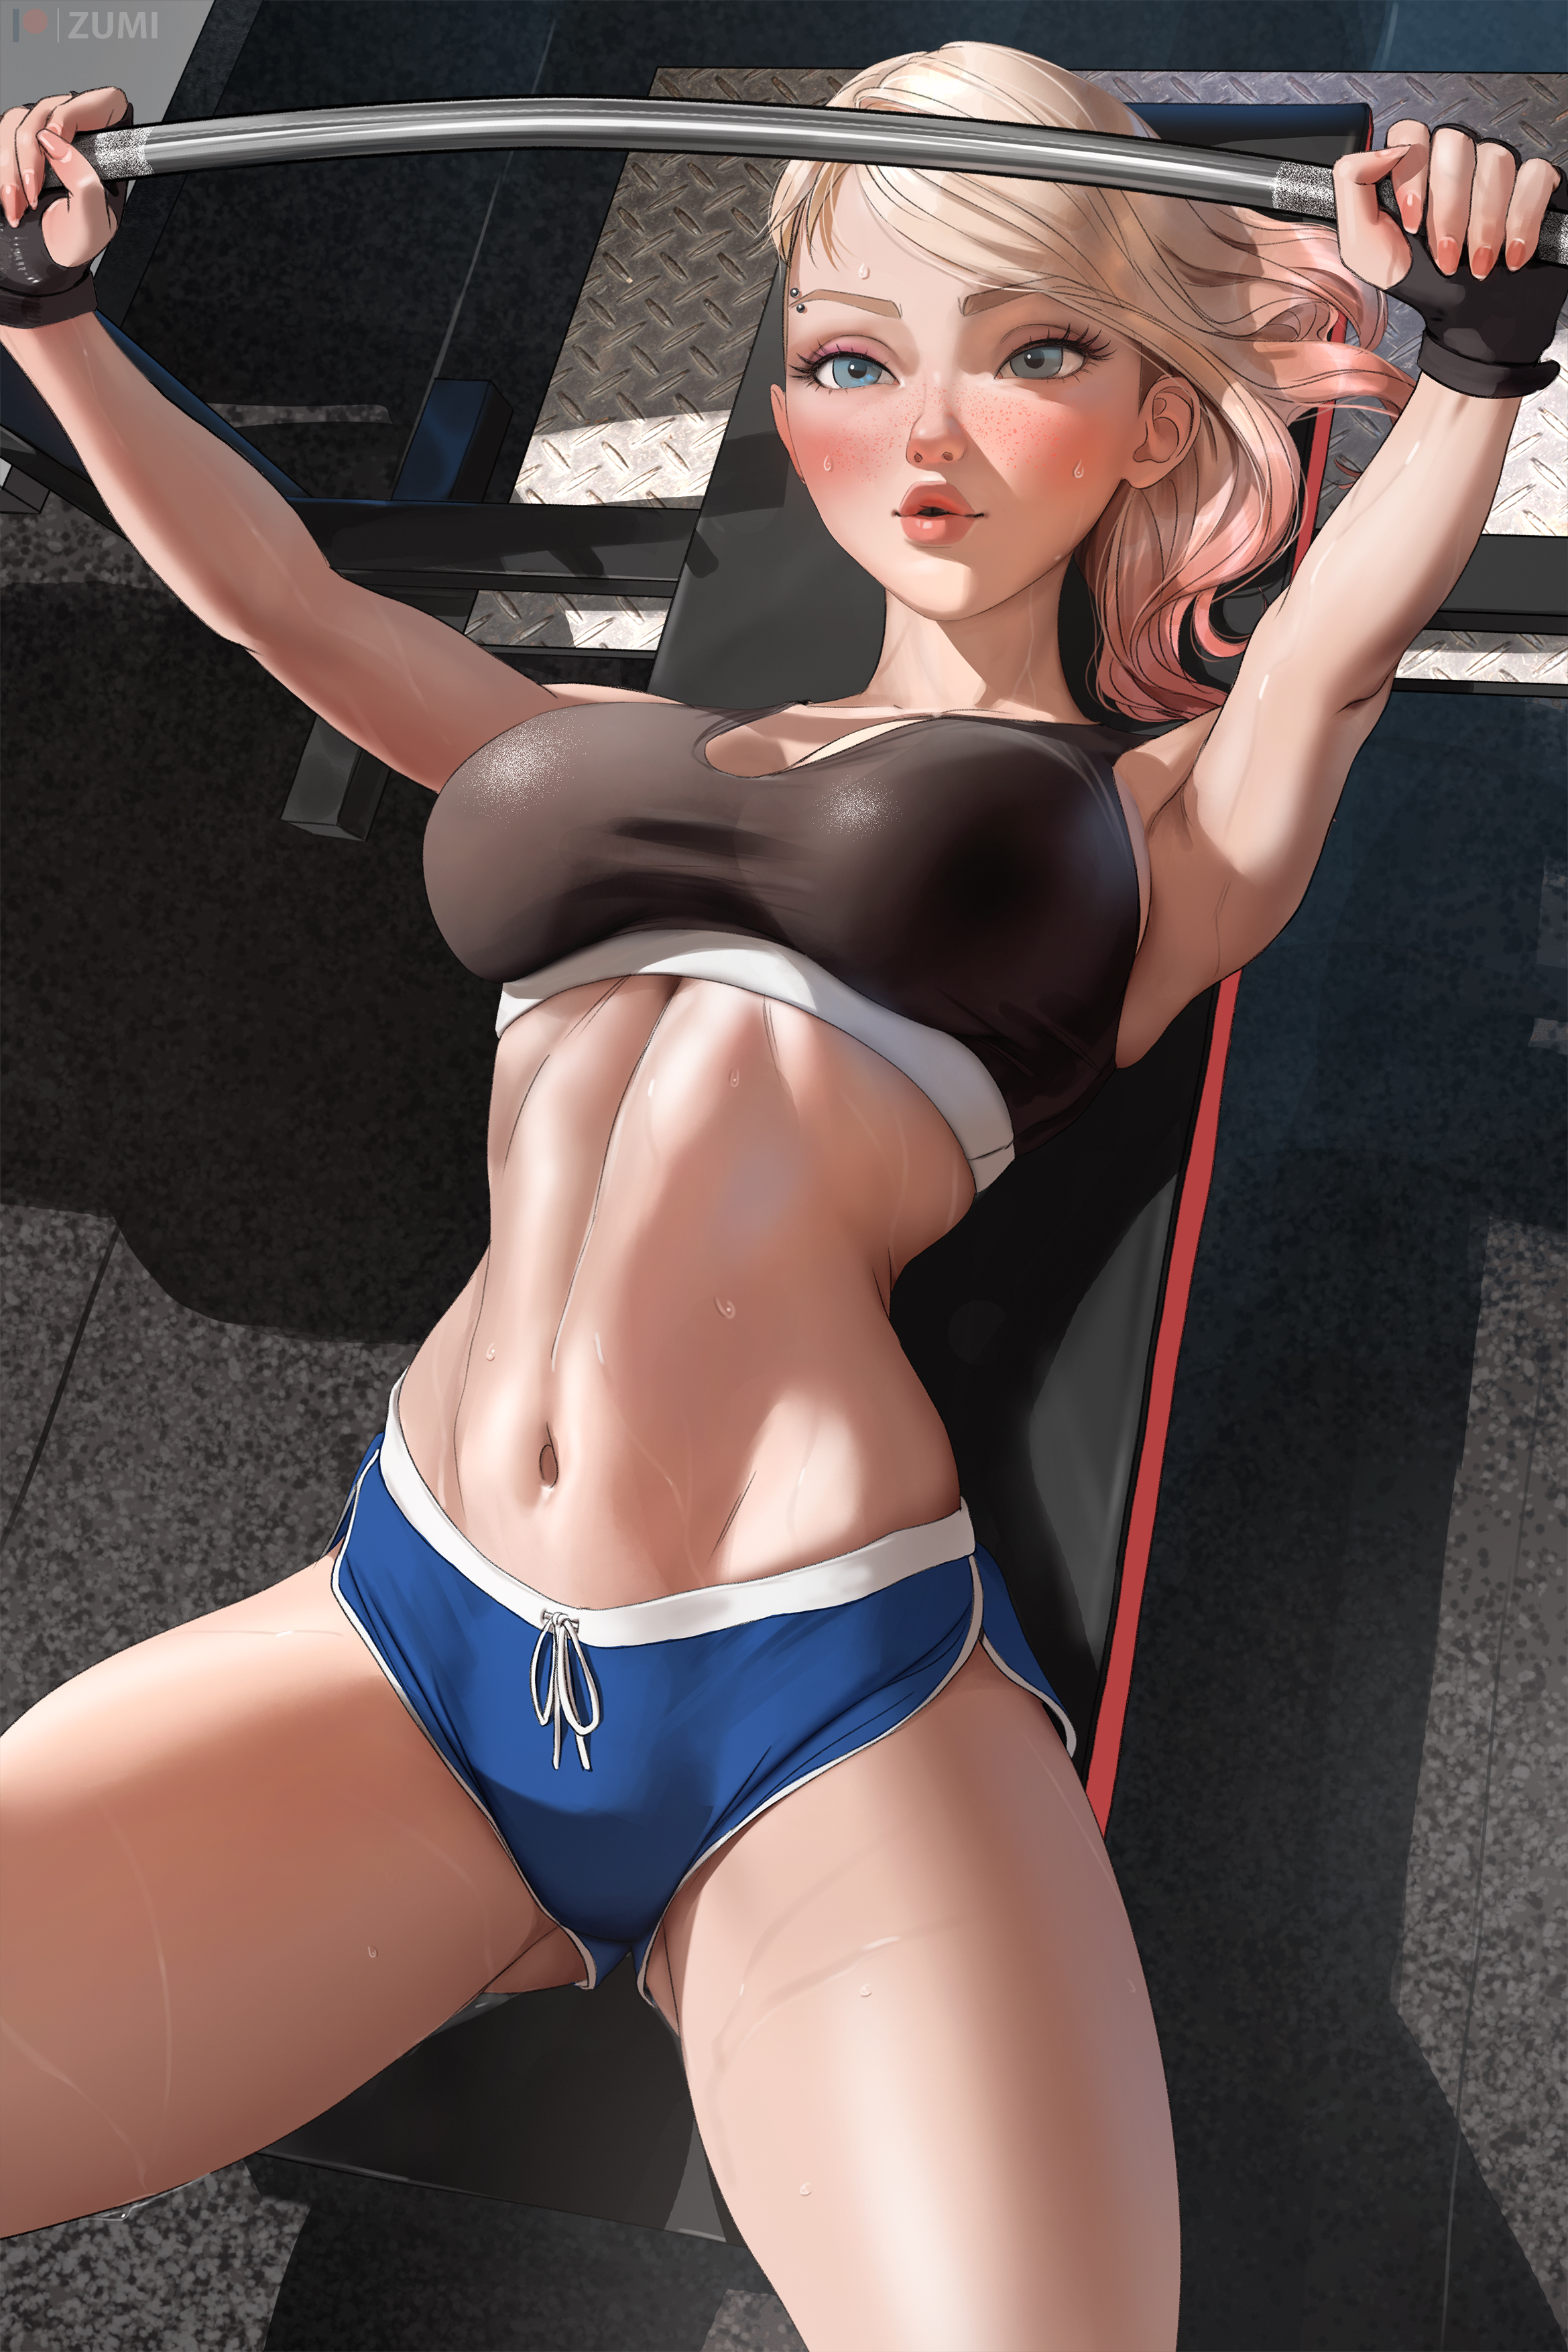 General 2339x3508 Gwen Stacy marvel character gyms sportswear artwork drawing fan art digital art Zumi